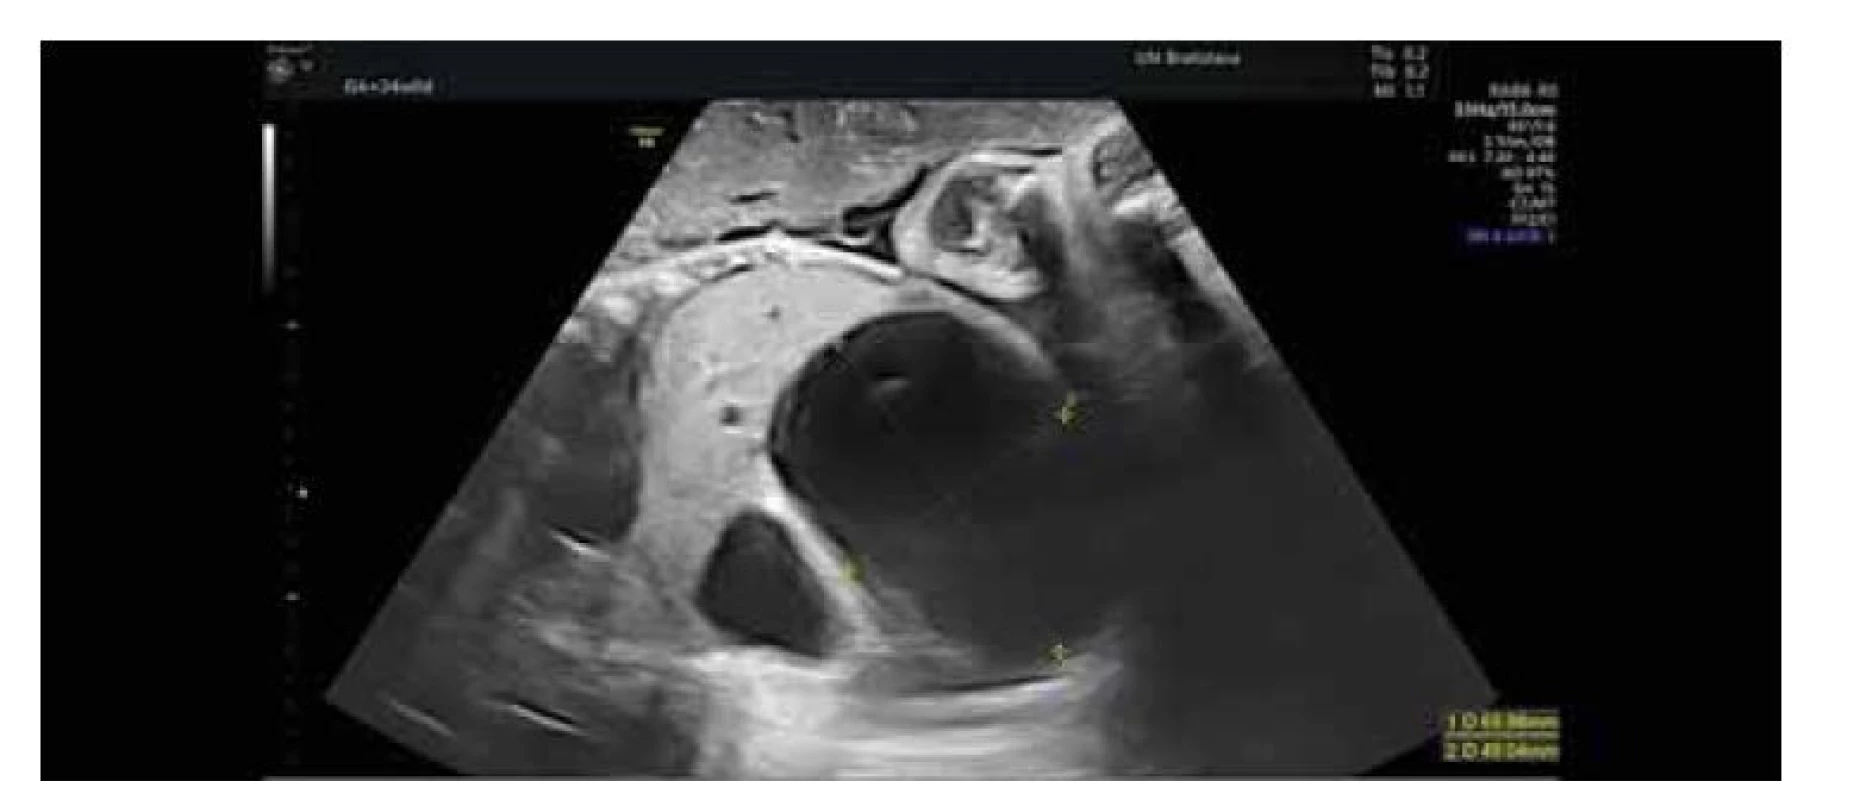 Plod v 34. týždni gestácie – axiálny ultrasonografický pohľad, progresia
anechogénnych cýst obličky veľkých rozmerov spôsobujúce už útlak bránice.<br>
Fig. 3. Fetus in the 34th week of gestation – axial ultrasonographic view, progression
of large anechoic kidney cysts already causing diaphragmatic pressure.